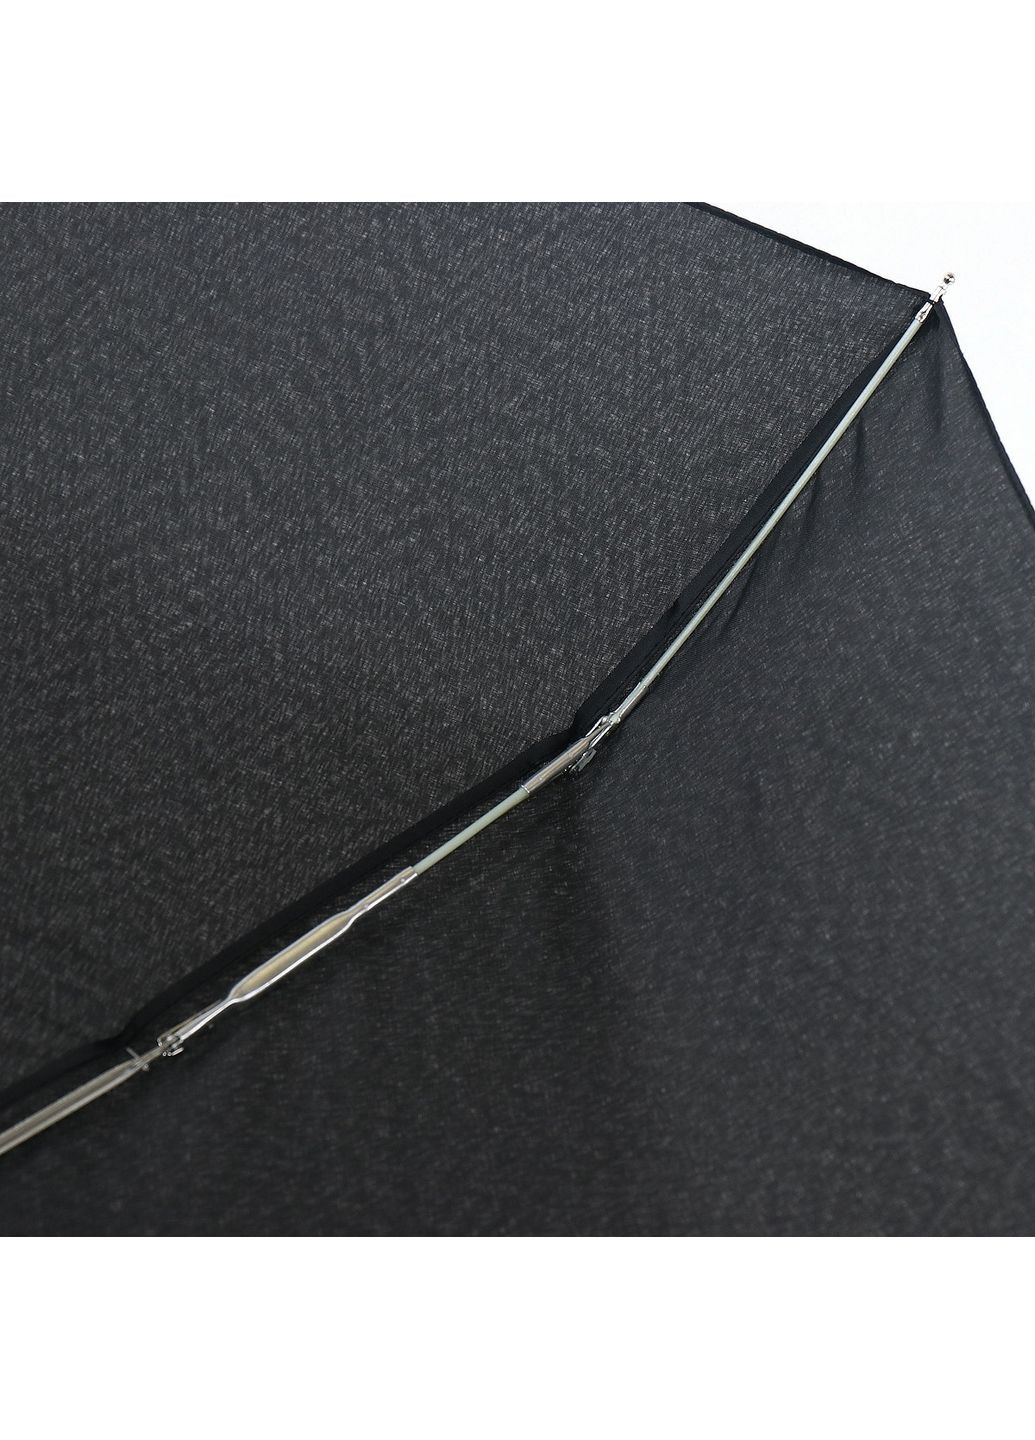 Мужской складной зонт механический ArtRain (282593396)